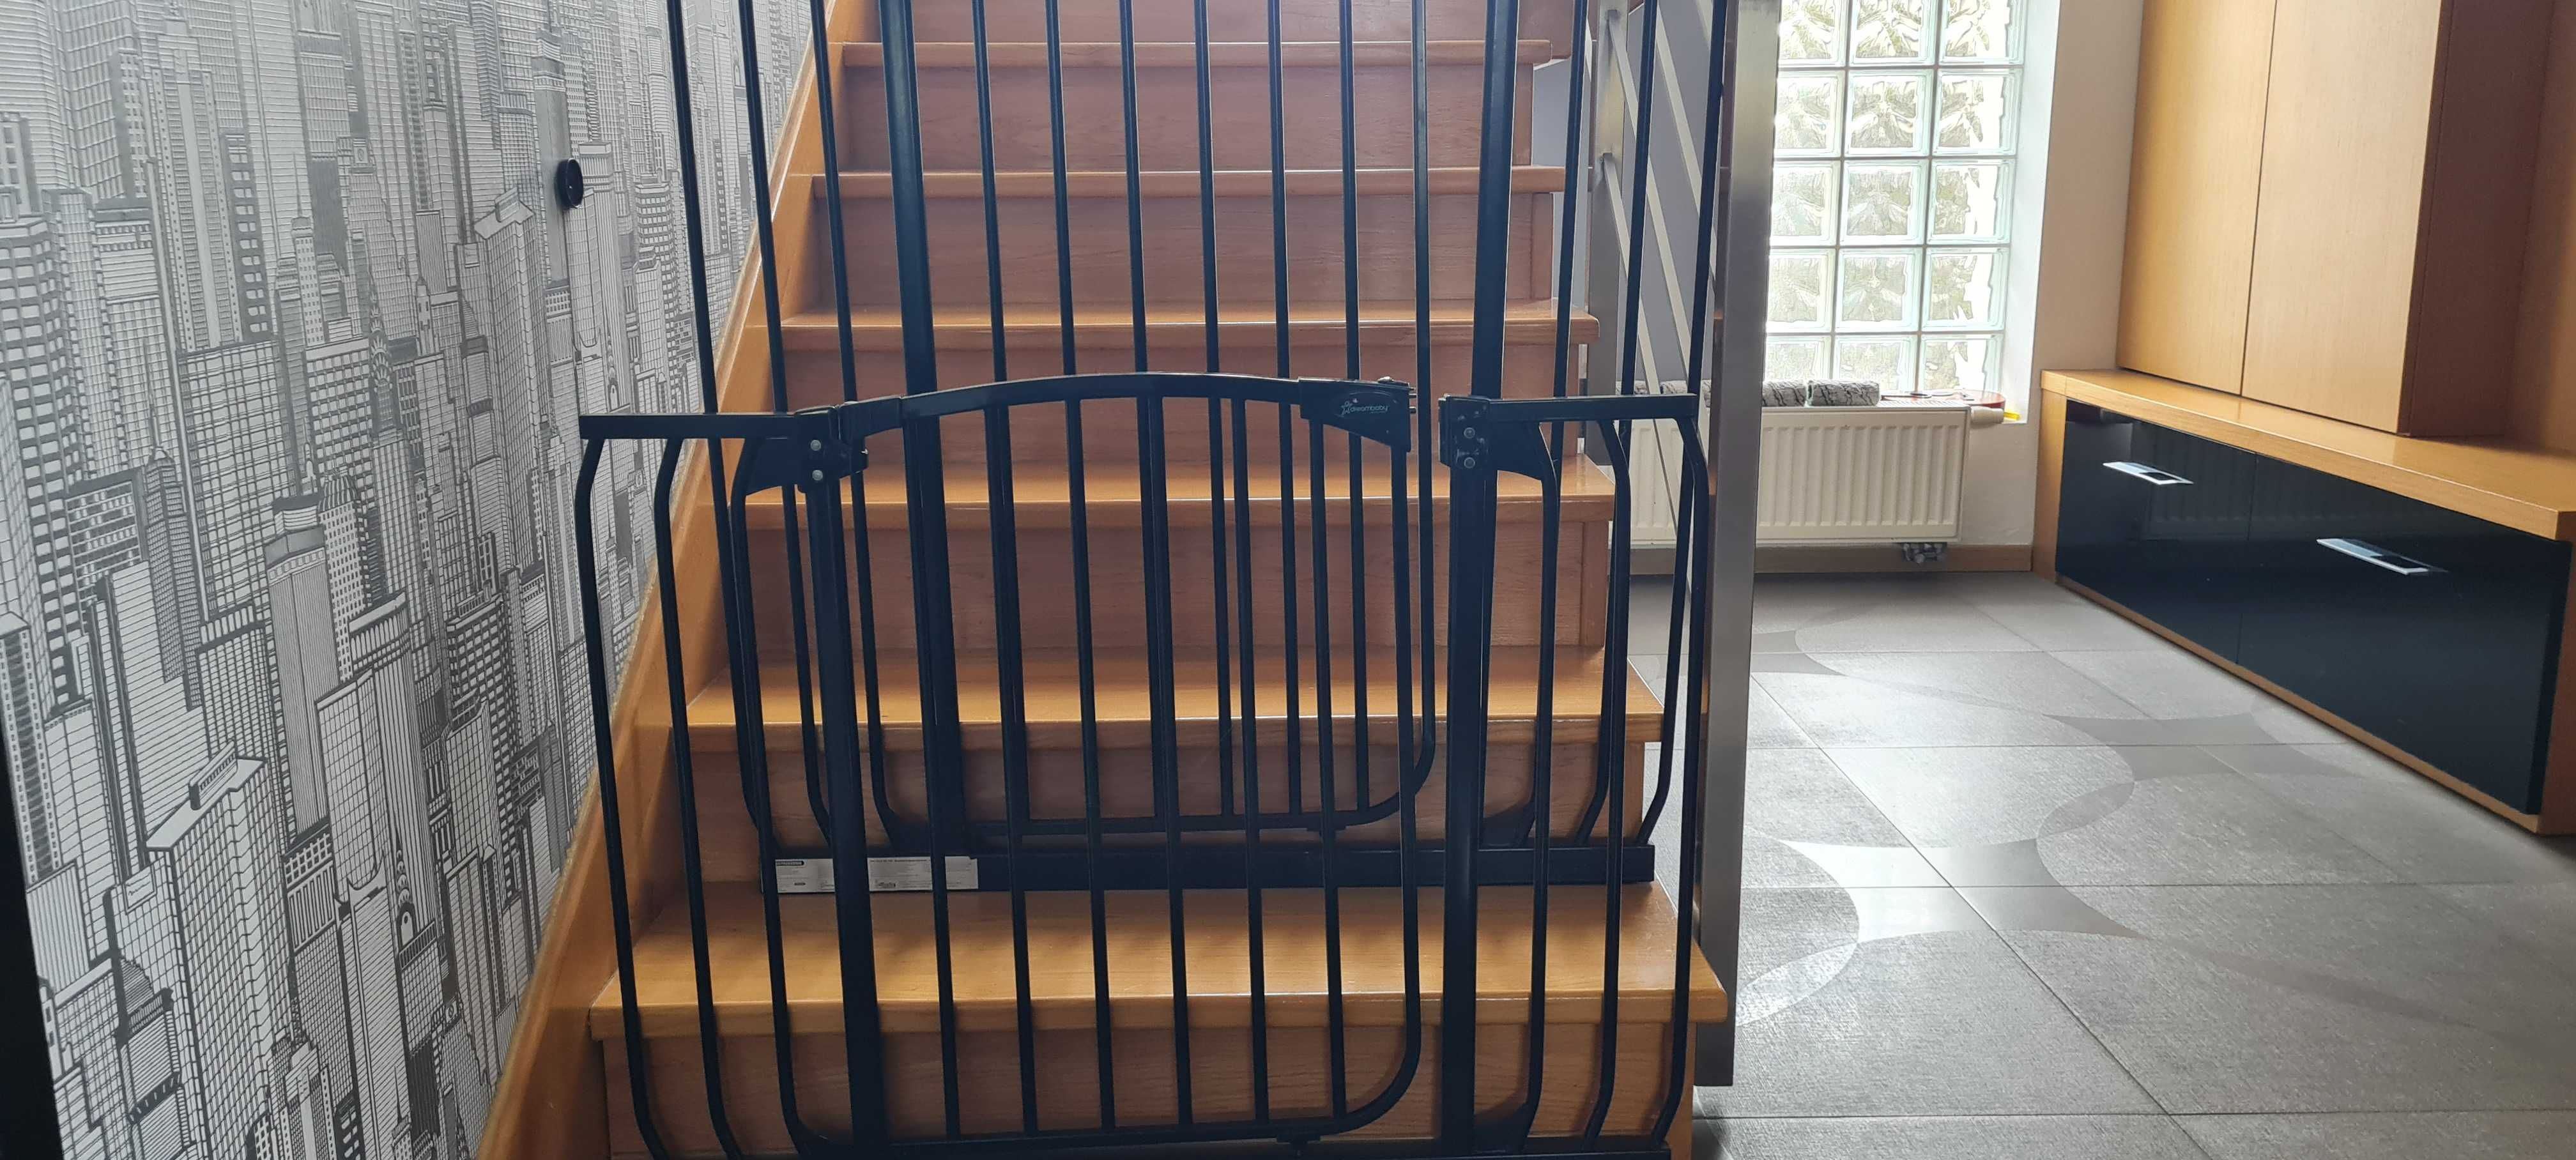 bramka zabezpieczająca na schody dla dzieci- 2szt